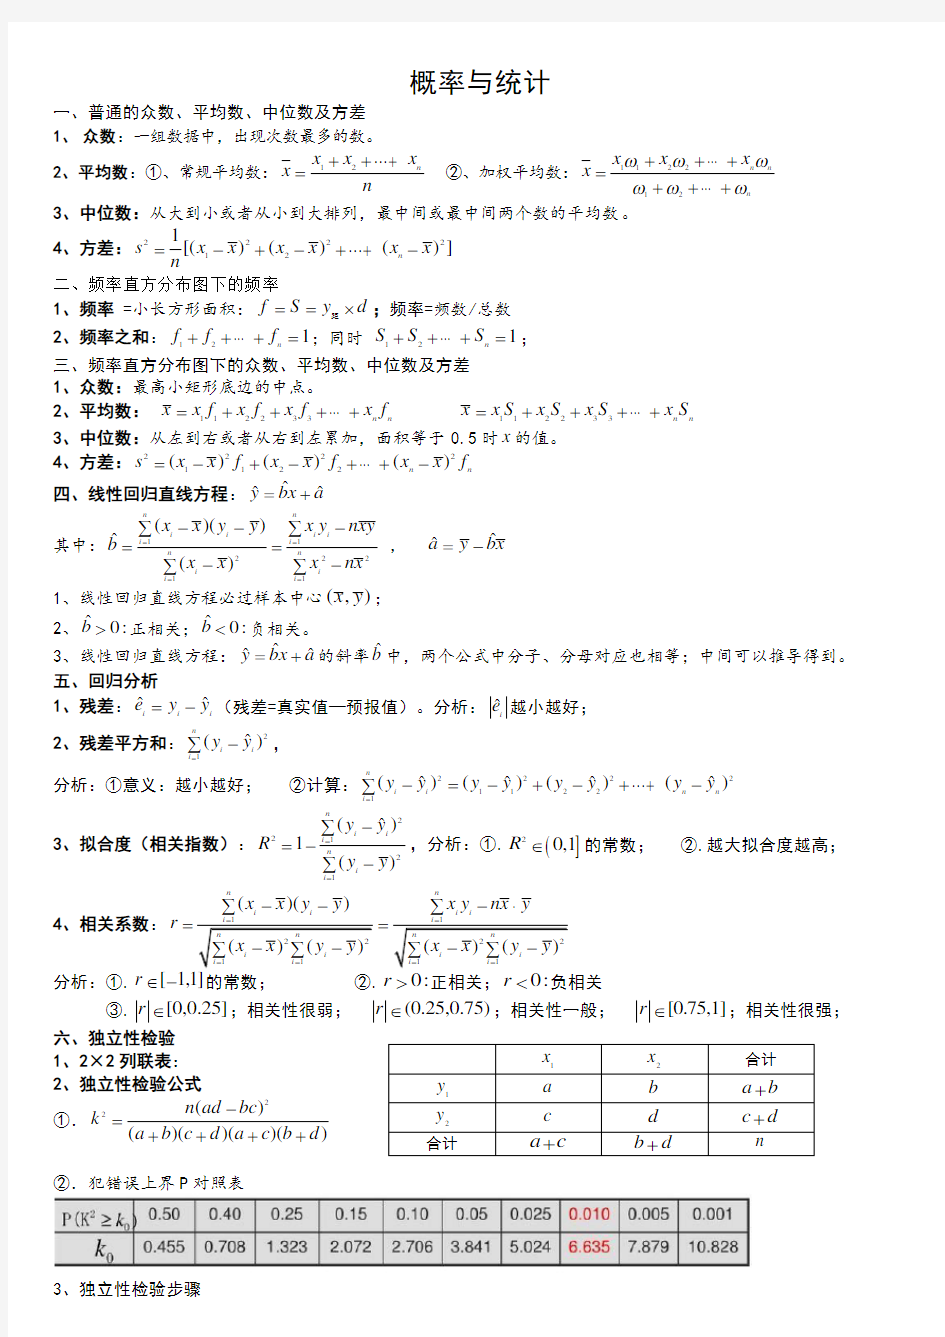 (最全)高中数学概率统计知识点总结